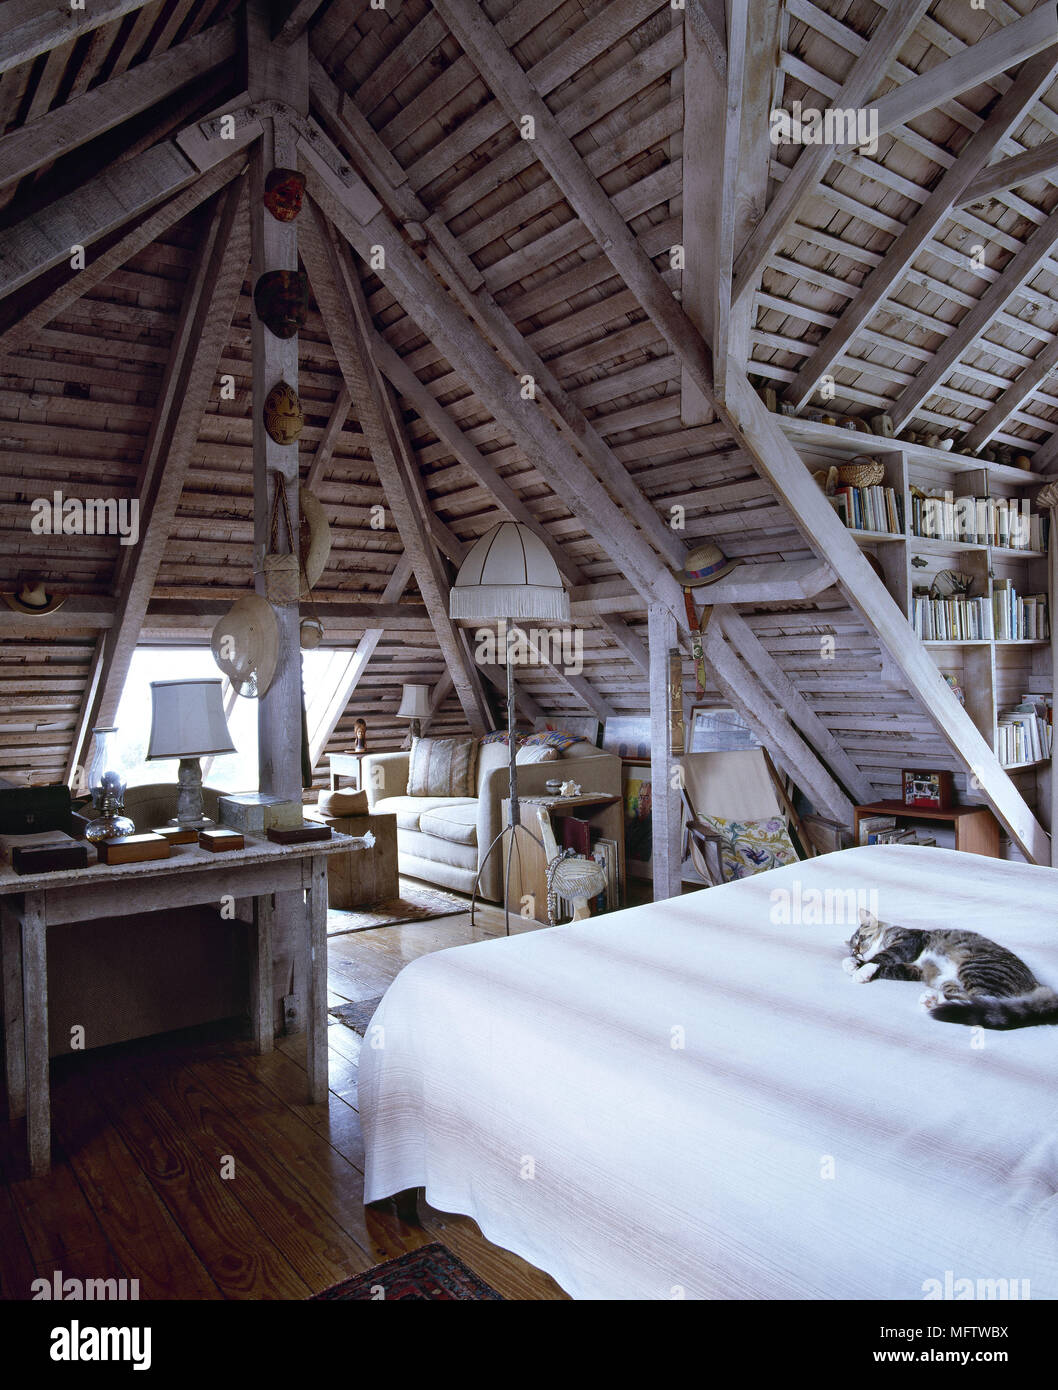 Im Landhausstil Schlafzimmer Mit Holzdach Und Balken